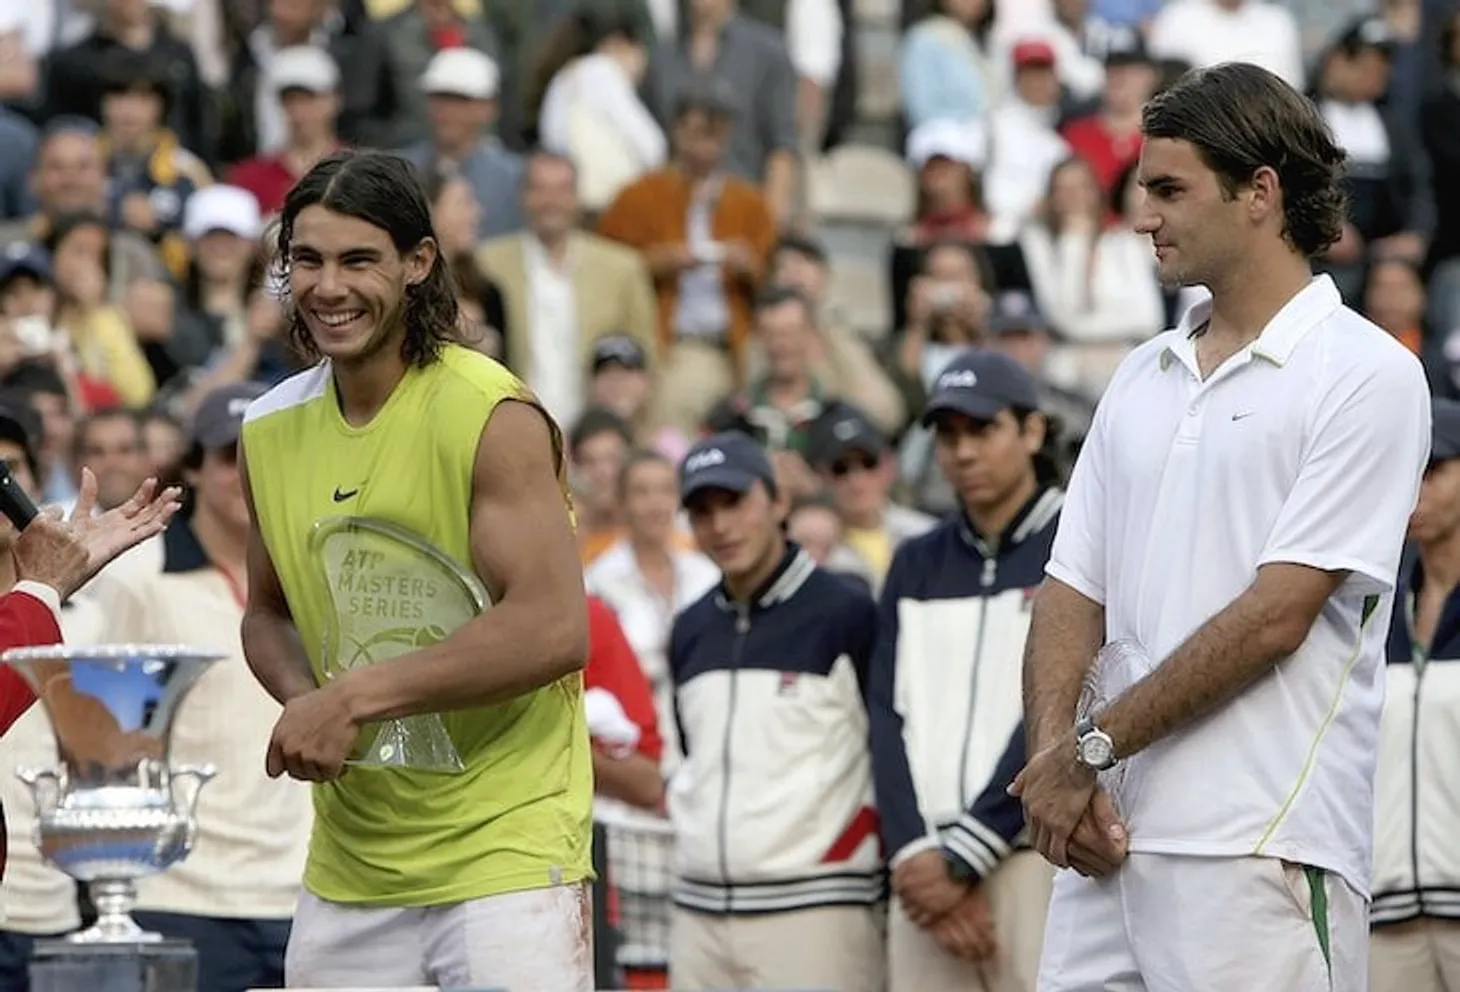 15 лет назад Надаль в Риме разбил Федереру сердце. Тот от обиды ругался с дядей испанца и назвал теннис Рафы одномерным